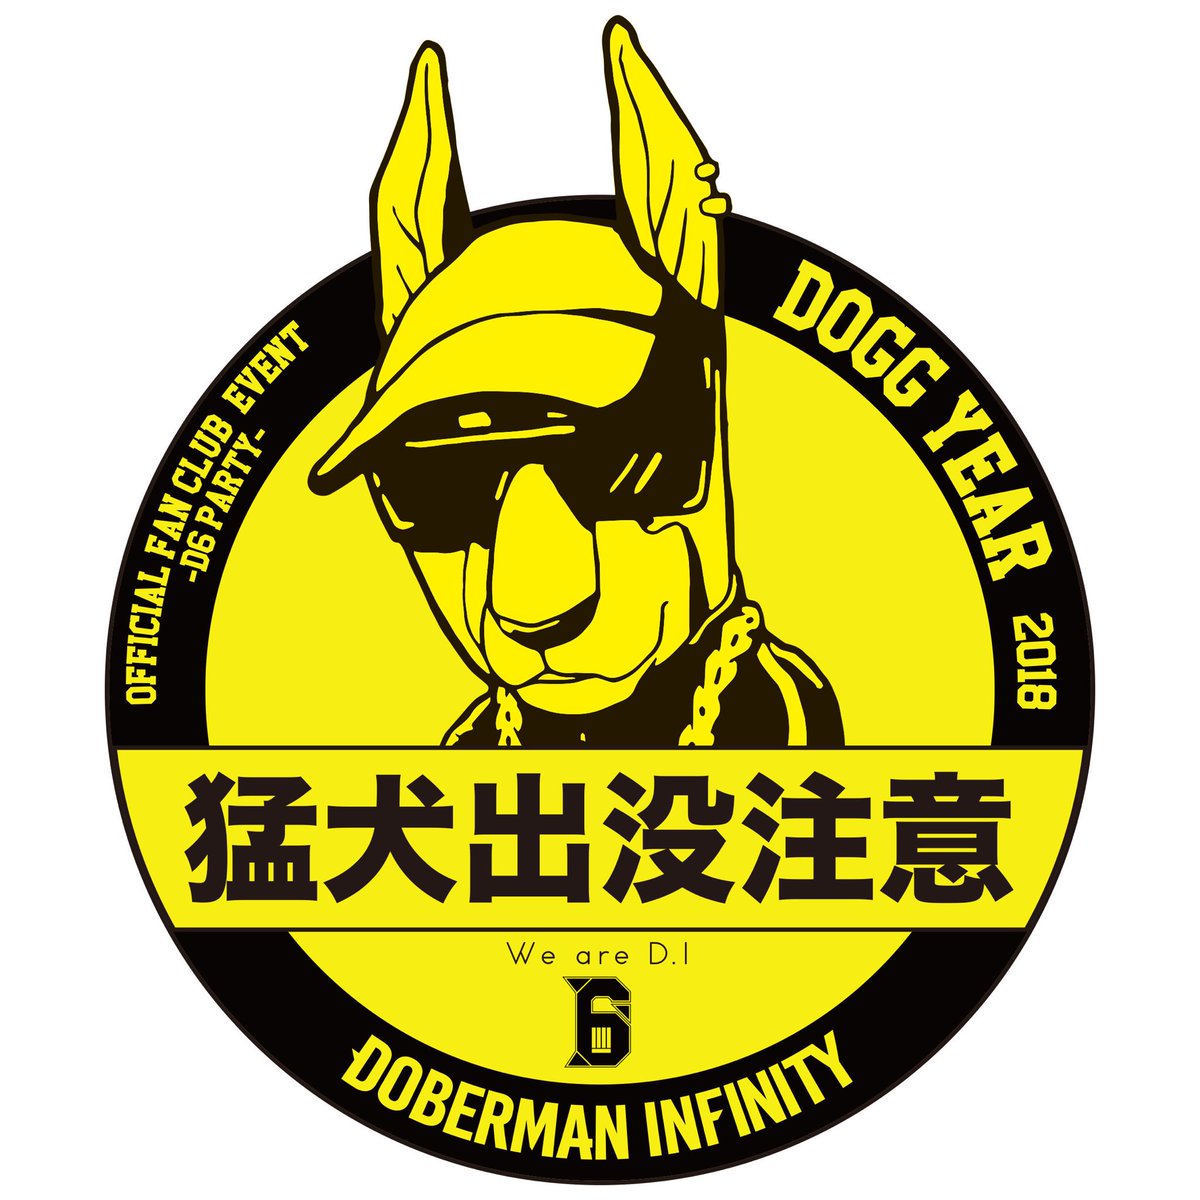 Doberman Infinity On Twitter ファンクラブ We Are D I 情報 会員限定イベント Doberman Infinity Official Fan Club Event D6 Party Dogg Year 開幕 の開催が決定しました 新年の始まりから一緒に盛り上がりましょう 詳しくは We Are D Iサイトを